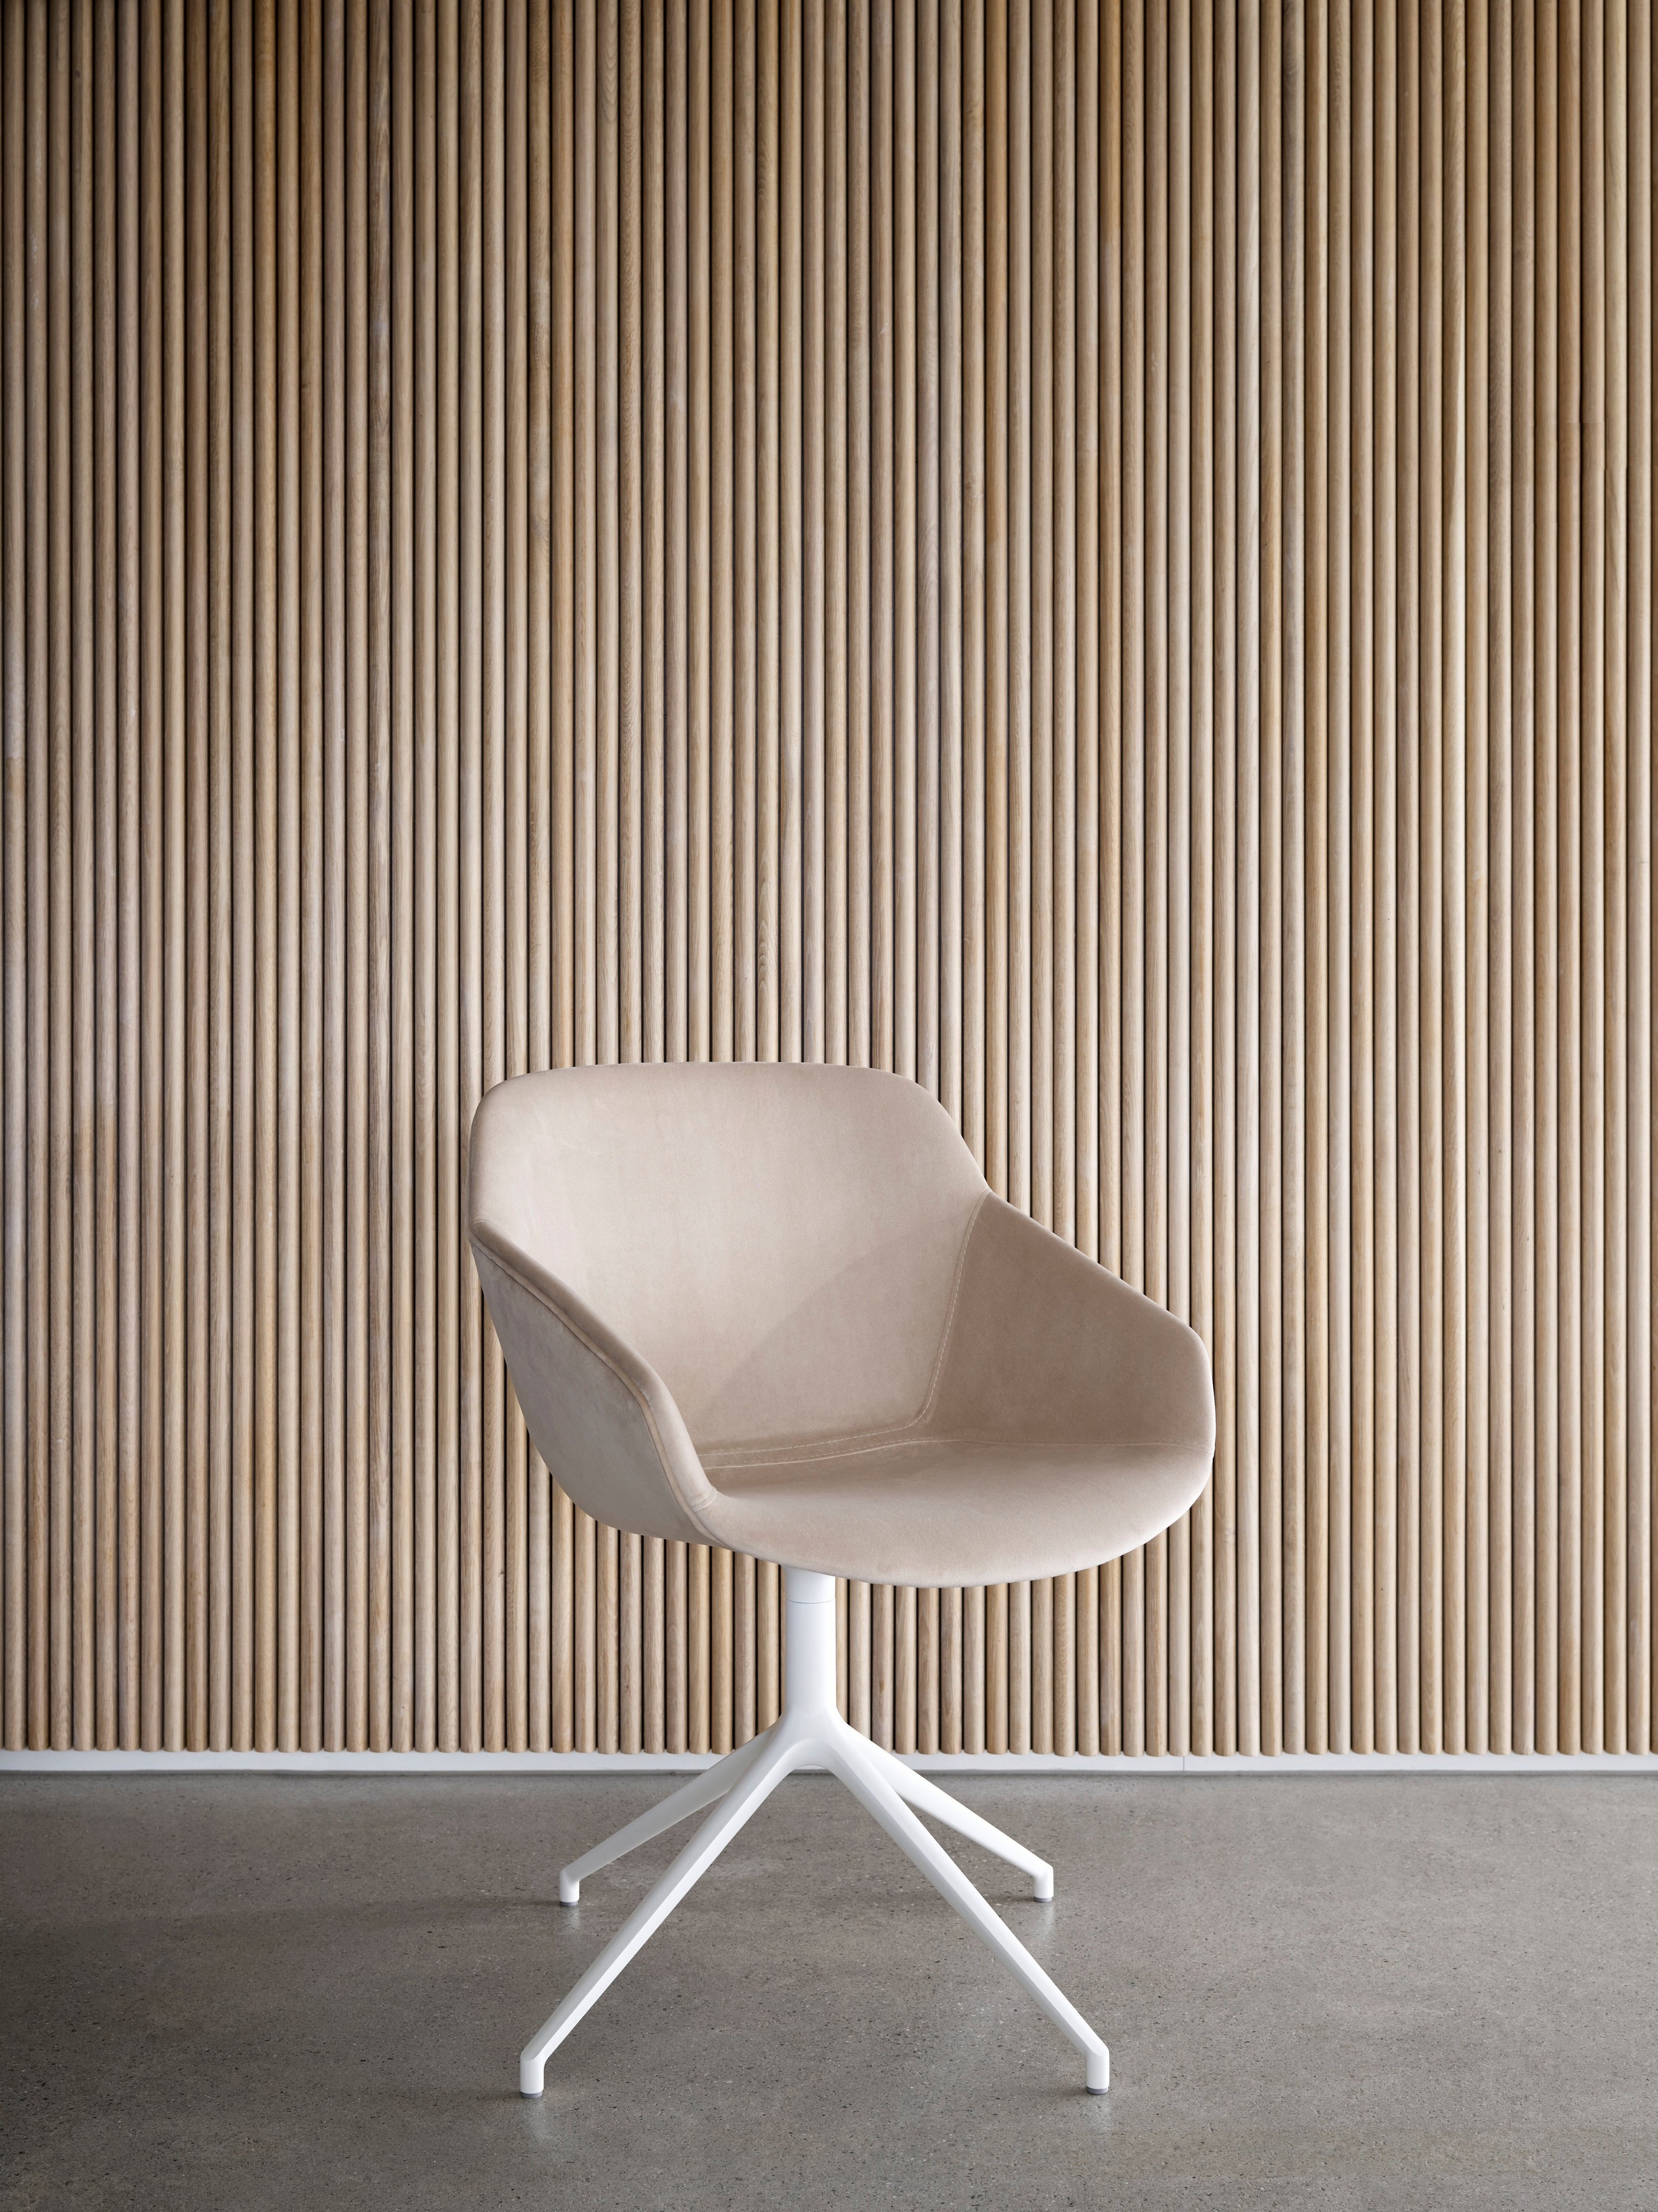 Chaise beige avec une base blanche contre un mur à lattes en bois vertical.